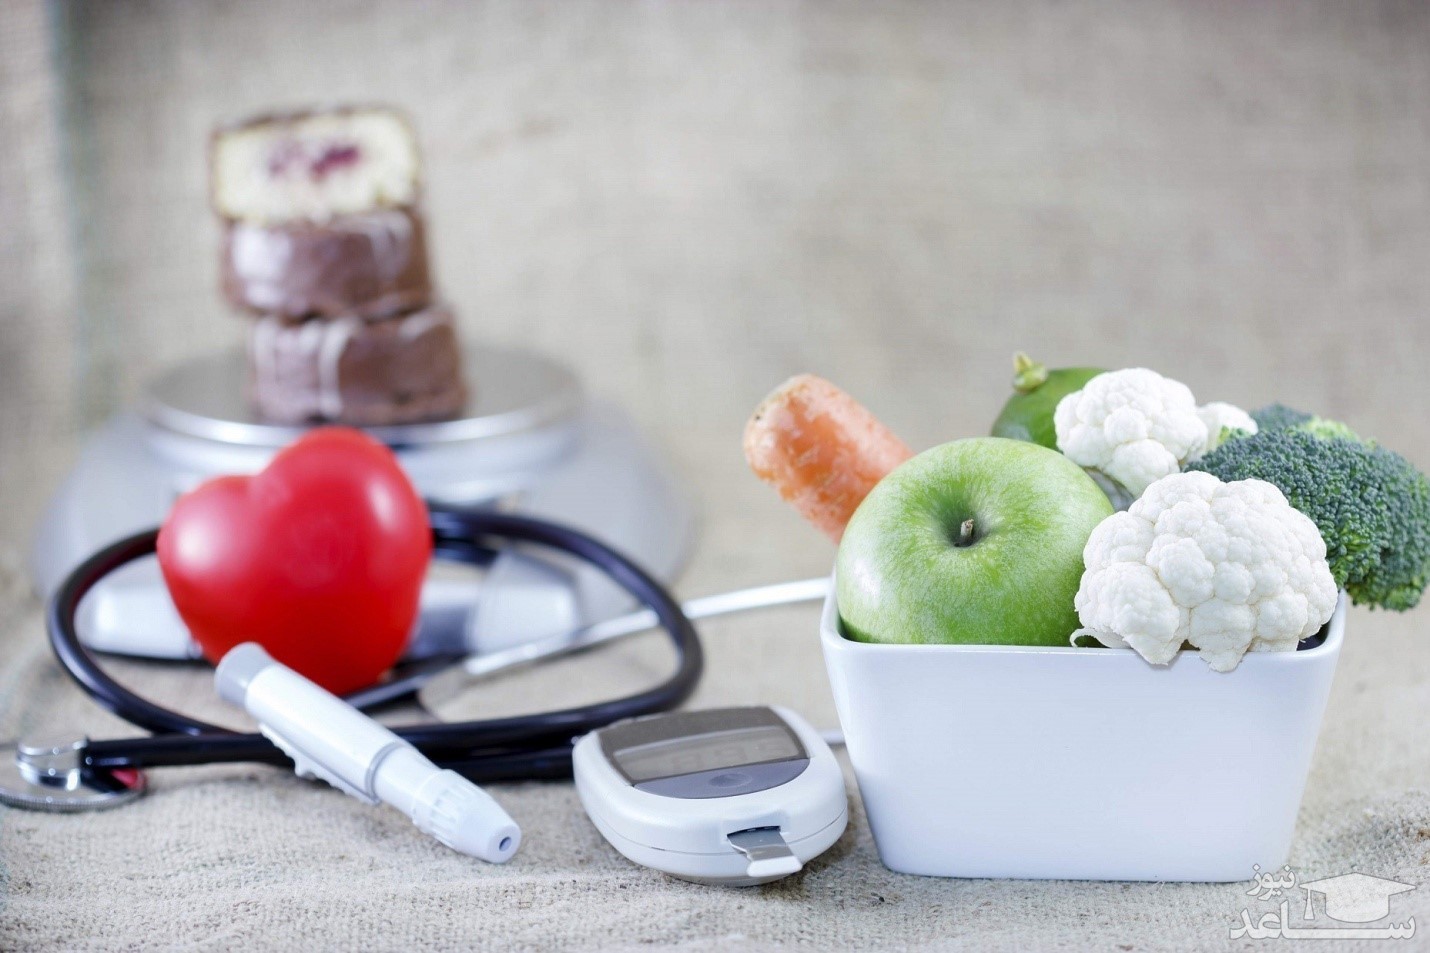 خوراکی های سالمی که در صورت زیاده روی به سلامت بدن آسیب وارد میکنند